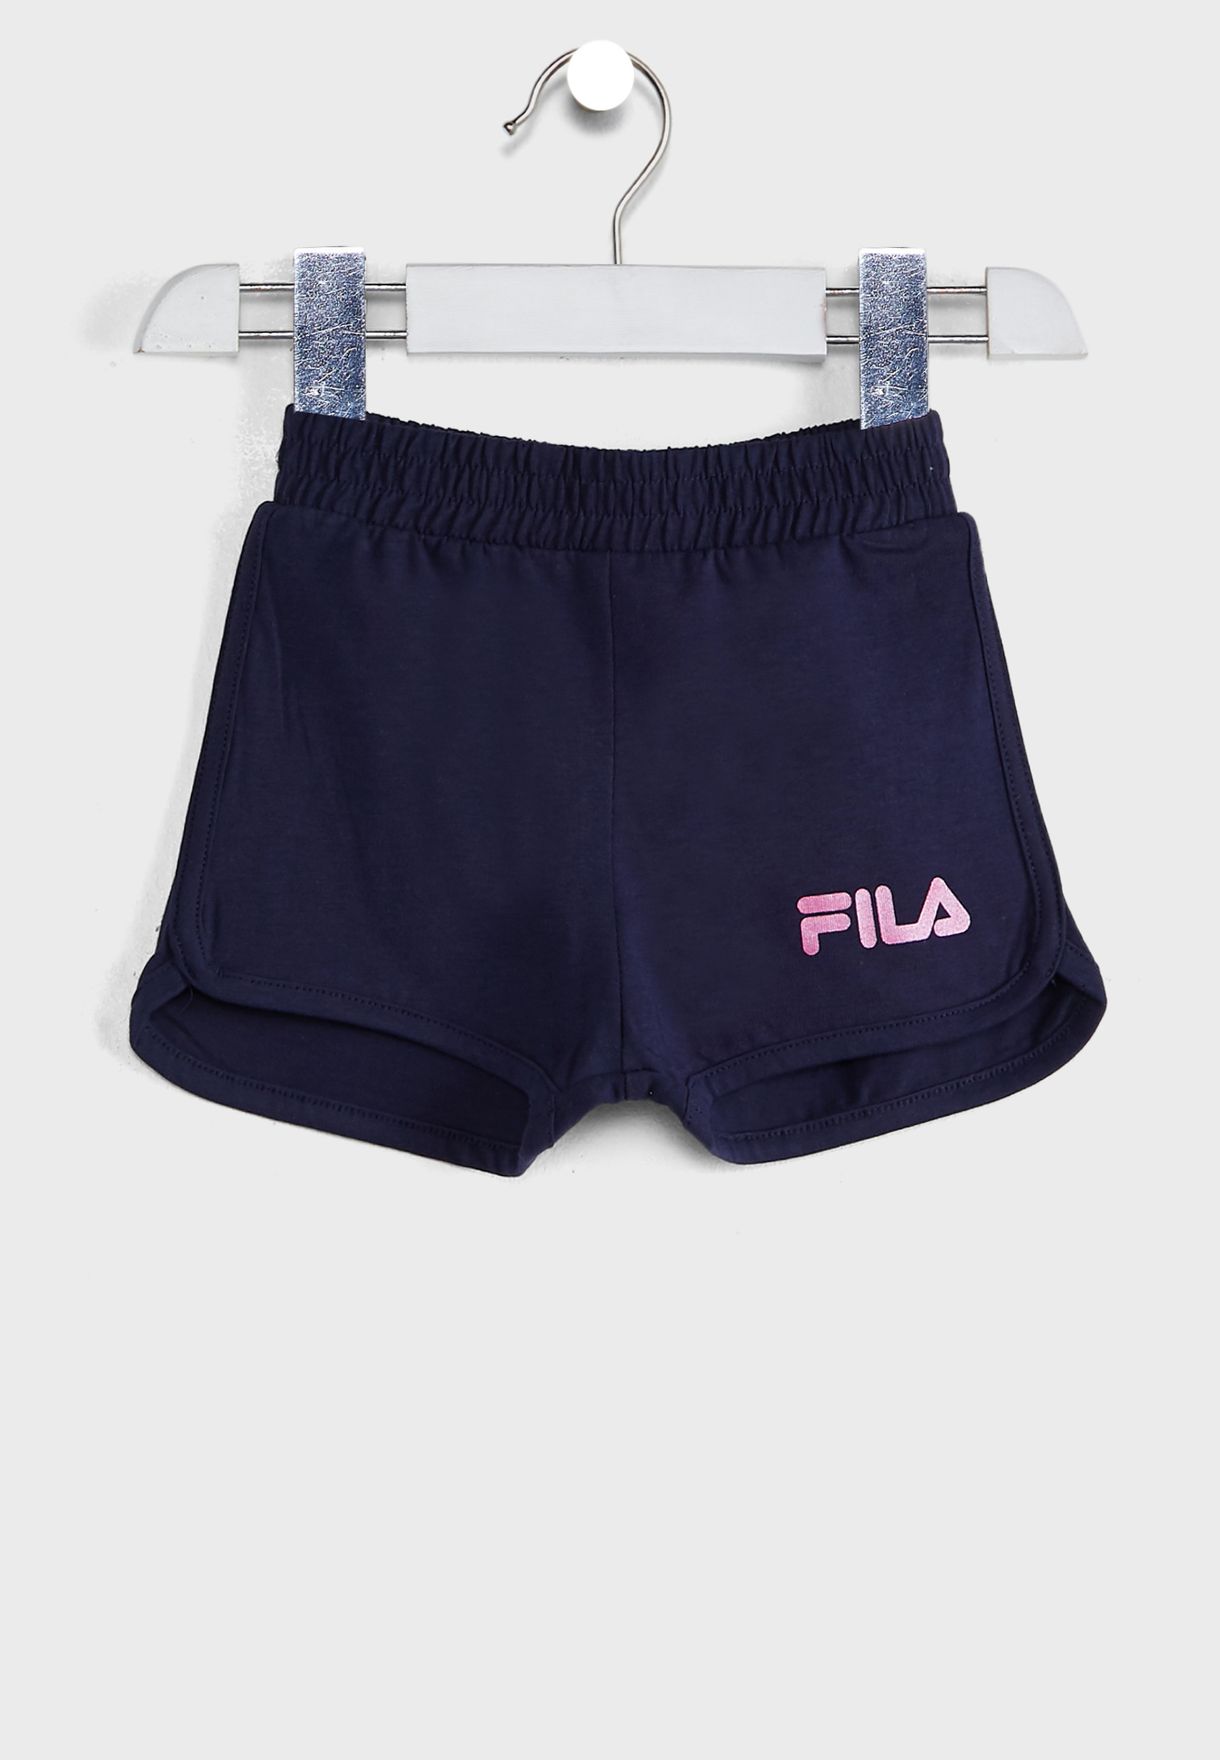 fila biker shorts set